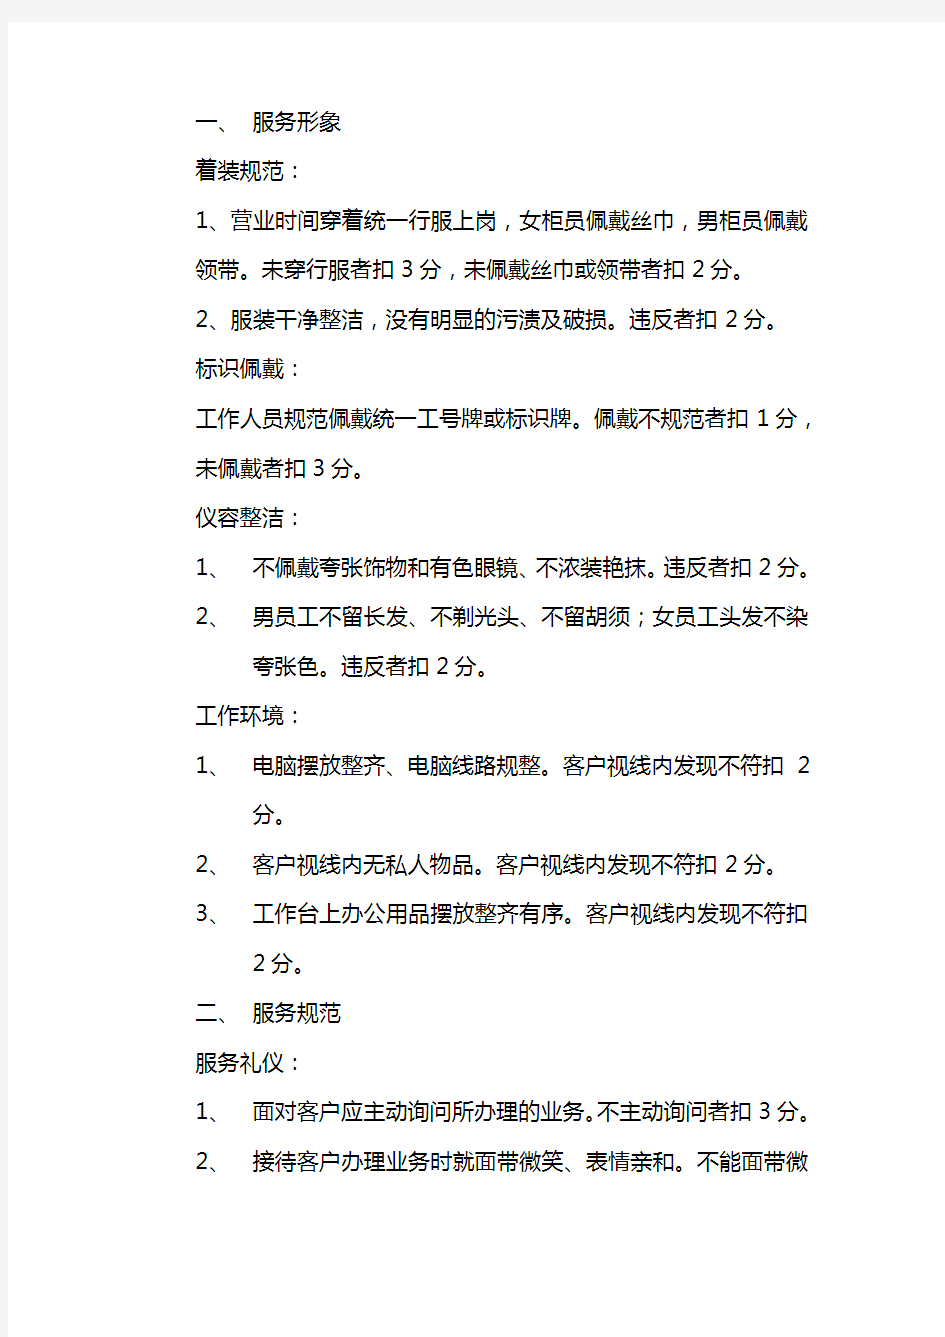 龙江银行营业部优质服务考核制度